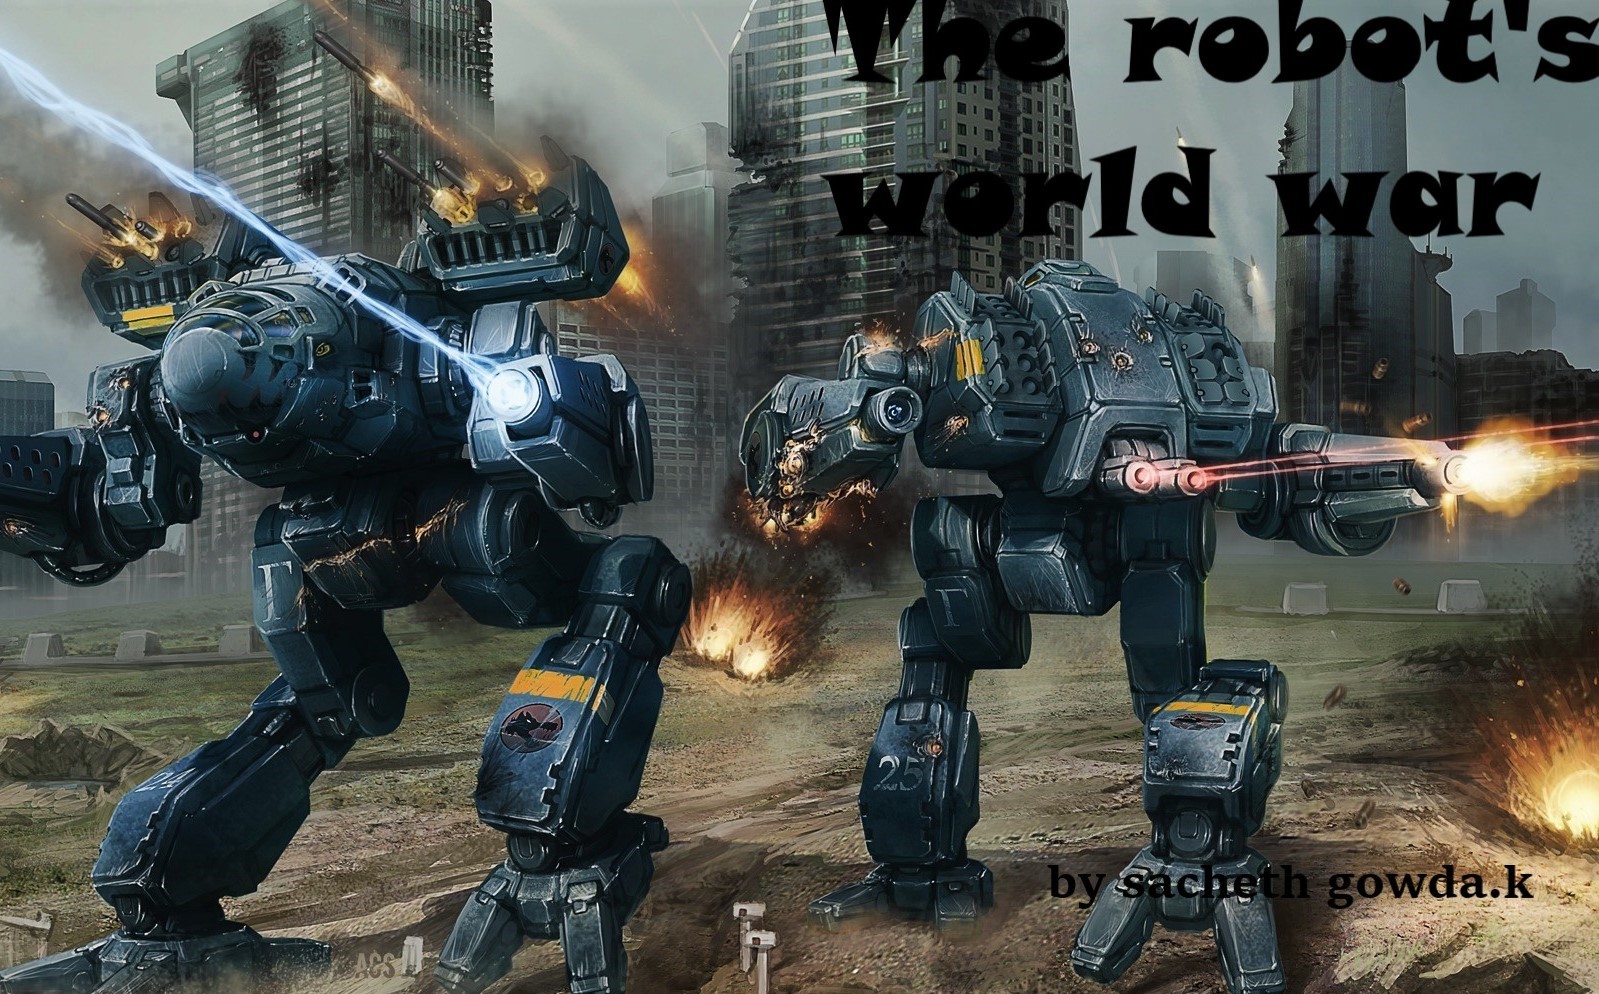 The Robot's World war